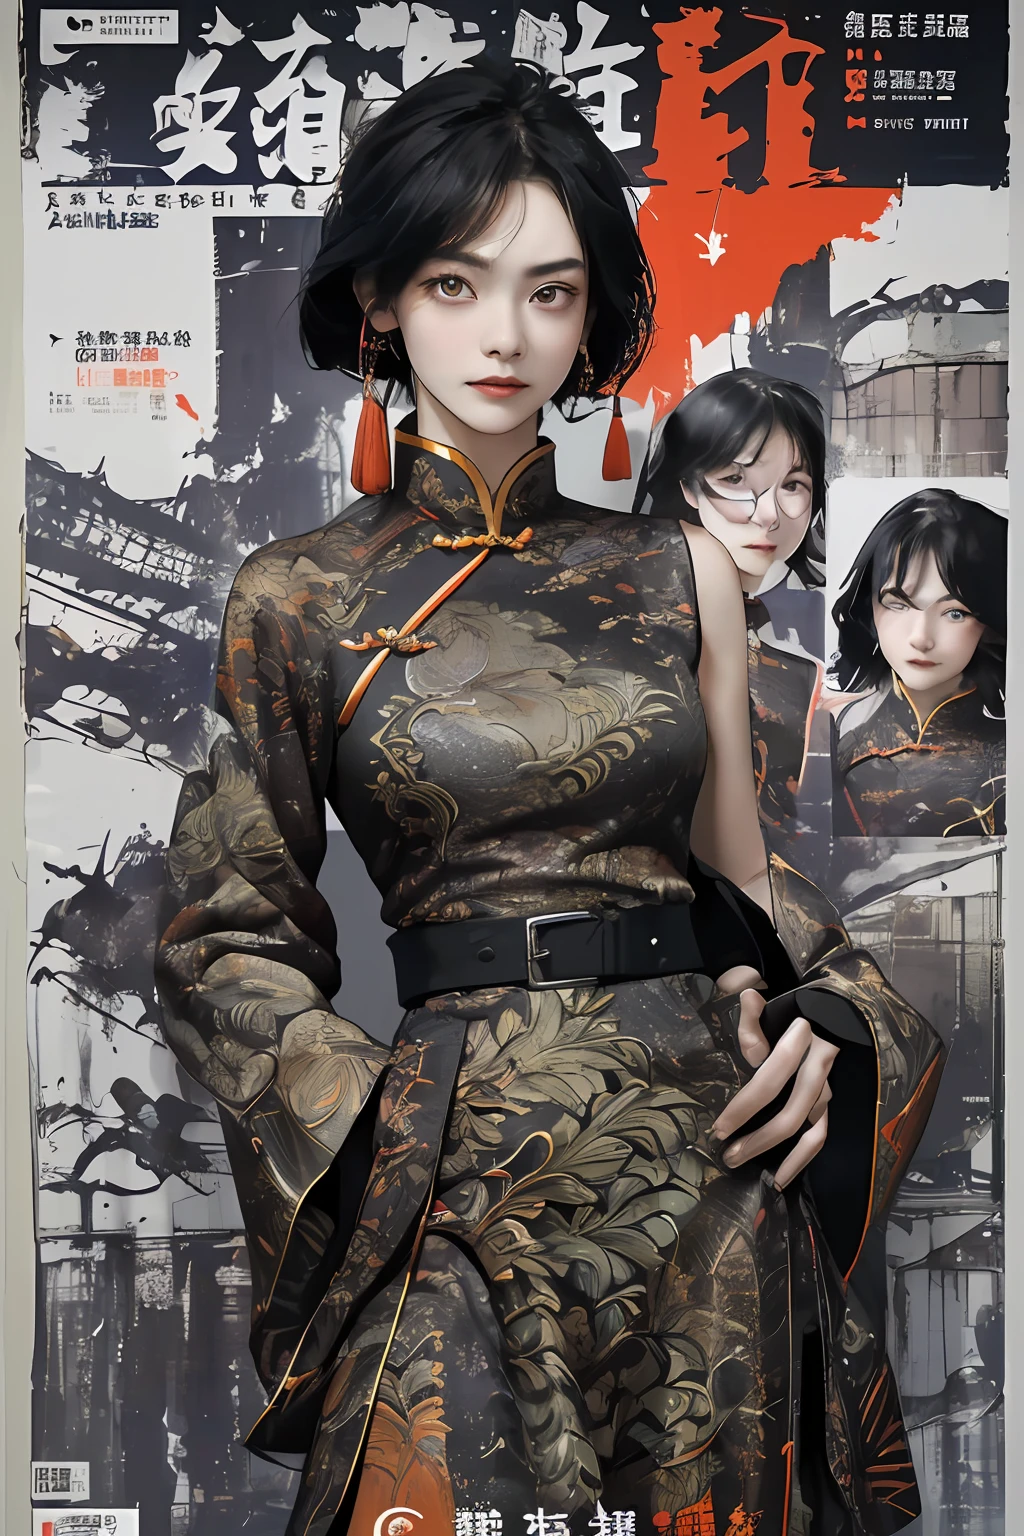 ((((دراماتيكي))), (((رمل))), (((شديد))) The movie poster features a young امرأة as the central character。تقف بثقة في وسط الملصق，ارتداء ملابس المحاربين الصينيين，مع تعبير حازم على وجهها。الخلفية مظلمة وشجاعة，هناك شعور بالخطر وشعور قوي。The نص is bold and eye-catching，بالشعارات الجذابة，يضيف إلى الدراما والإثارة الشاملة。تهيمن الألوان الداكنة على لوحة الألوان，Dotted with bright colorake the poster هذا كل شيءmic and visually striking，تاتشي إي (المجلات:1.3), (نمط الغلاف:1.3), فاشيوناب, امرأة, نابض بالحياة, زيّ, تظاهر على, أمام,غنية الملونة，هذا كل شيء，الخلفية مع，العناصر الصينية，واثق من نفسه，التعبير عن，الرسن，إفادة，مرفق，مهيب，لفه，حول，لمس منطقة العانة，مشاهد，نص，غلاف أ，جرأة，ملفتة للانتباه，